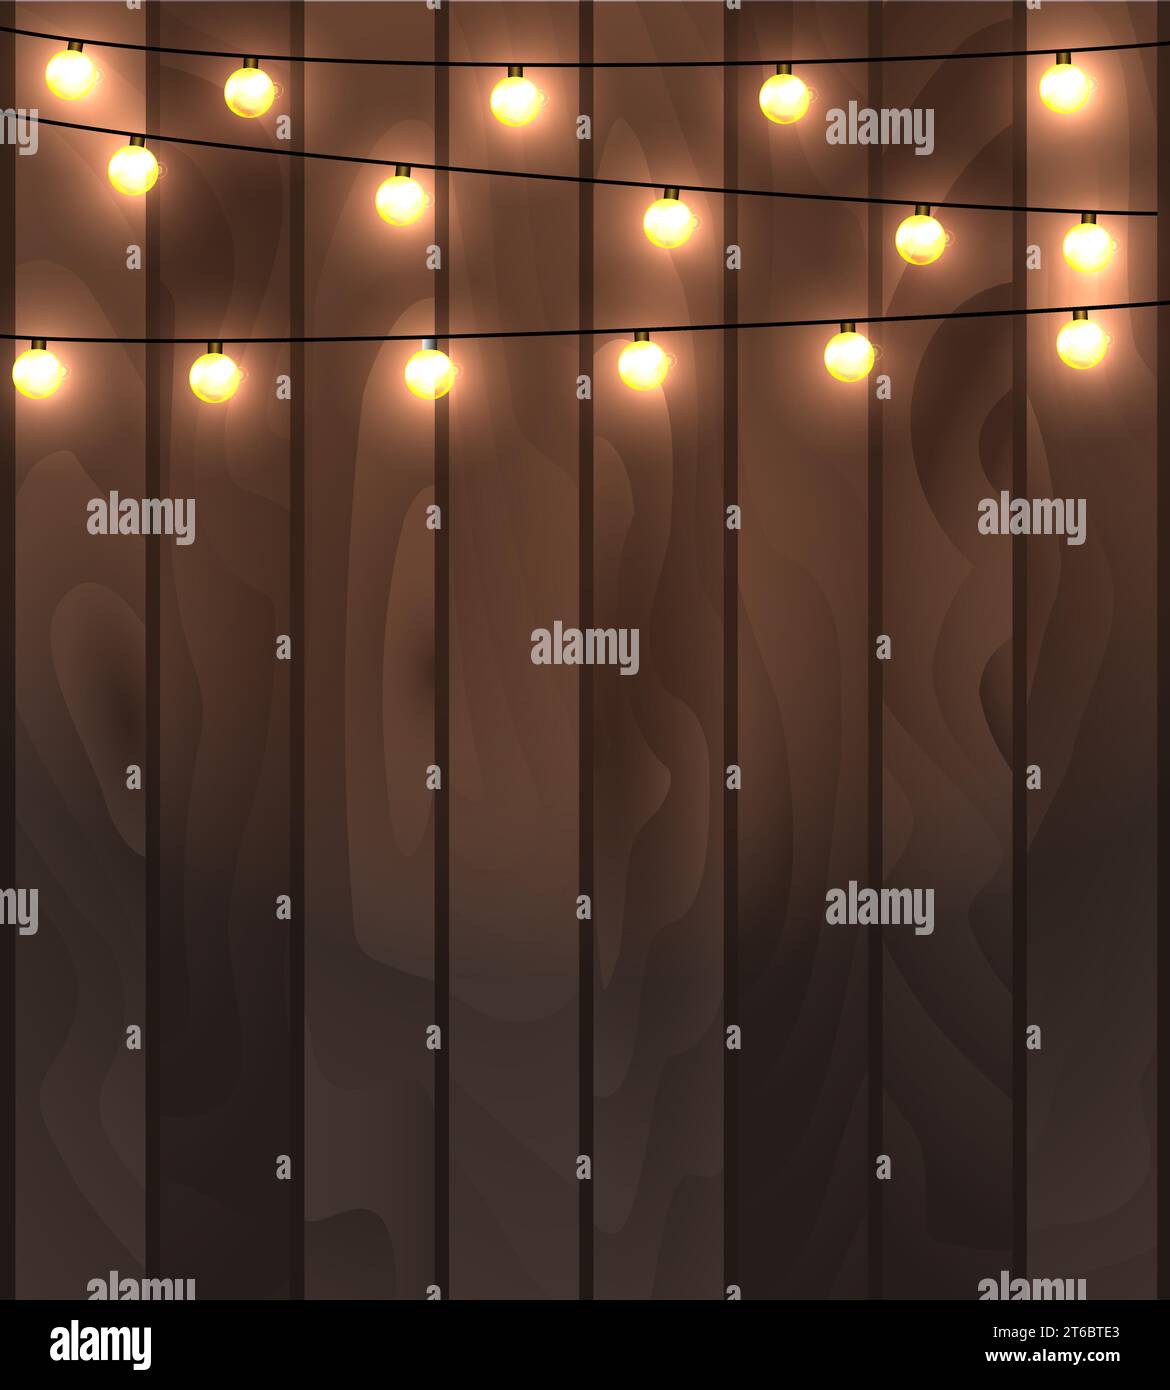 Illustrazione vettoriale di tavole di legno sfondo con illuminazione garland decorazione festosa, con corde di lampade rotonde. Illustrazione Vettoriale